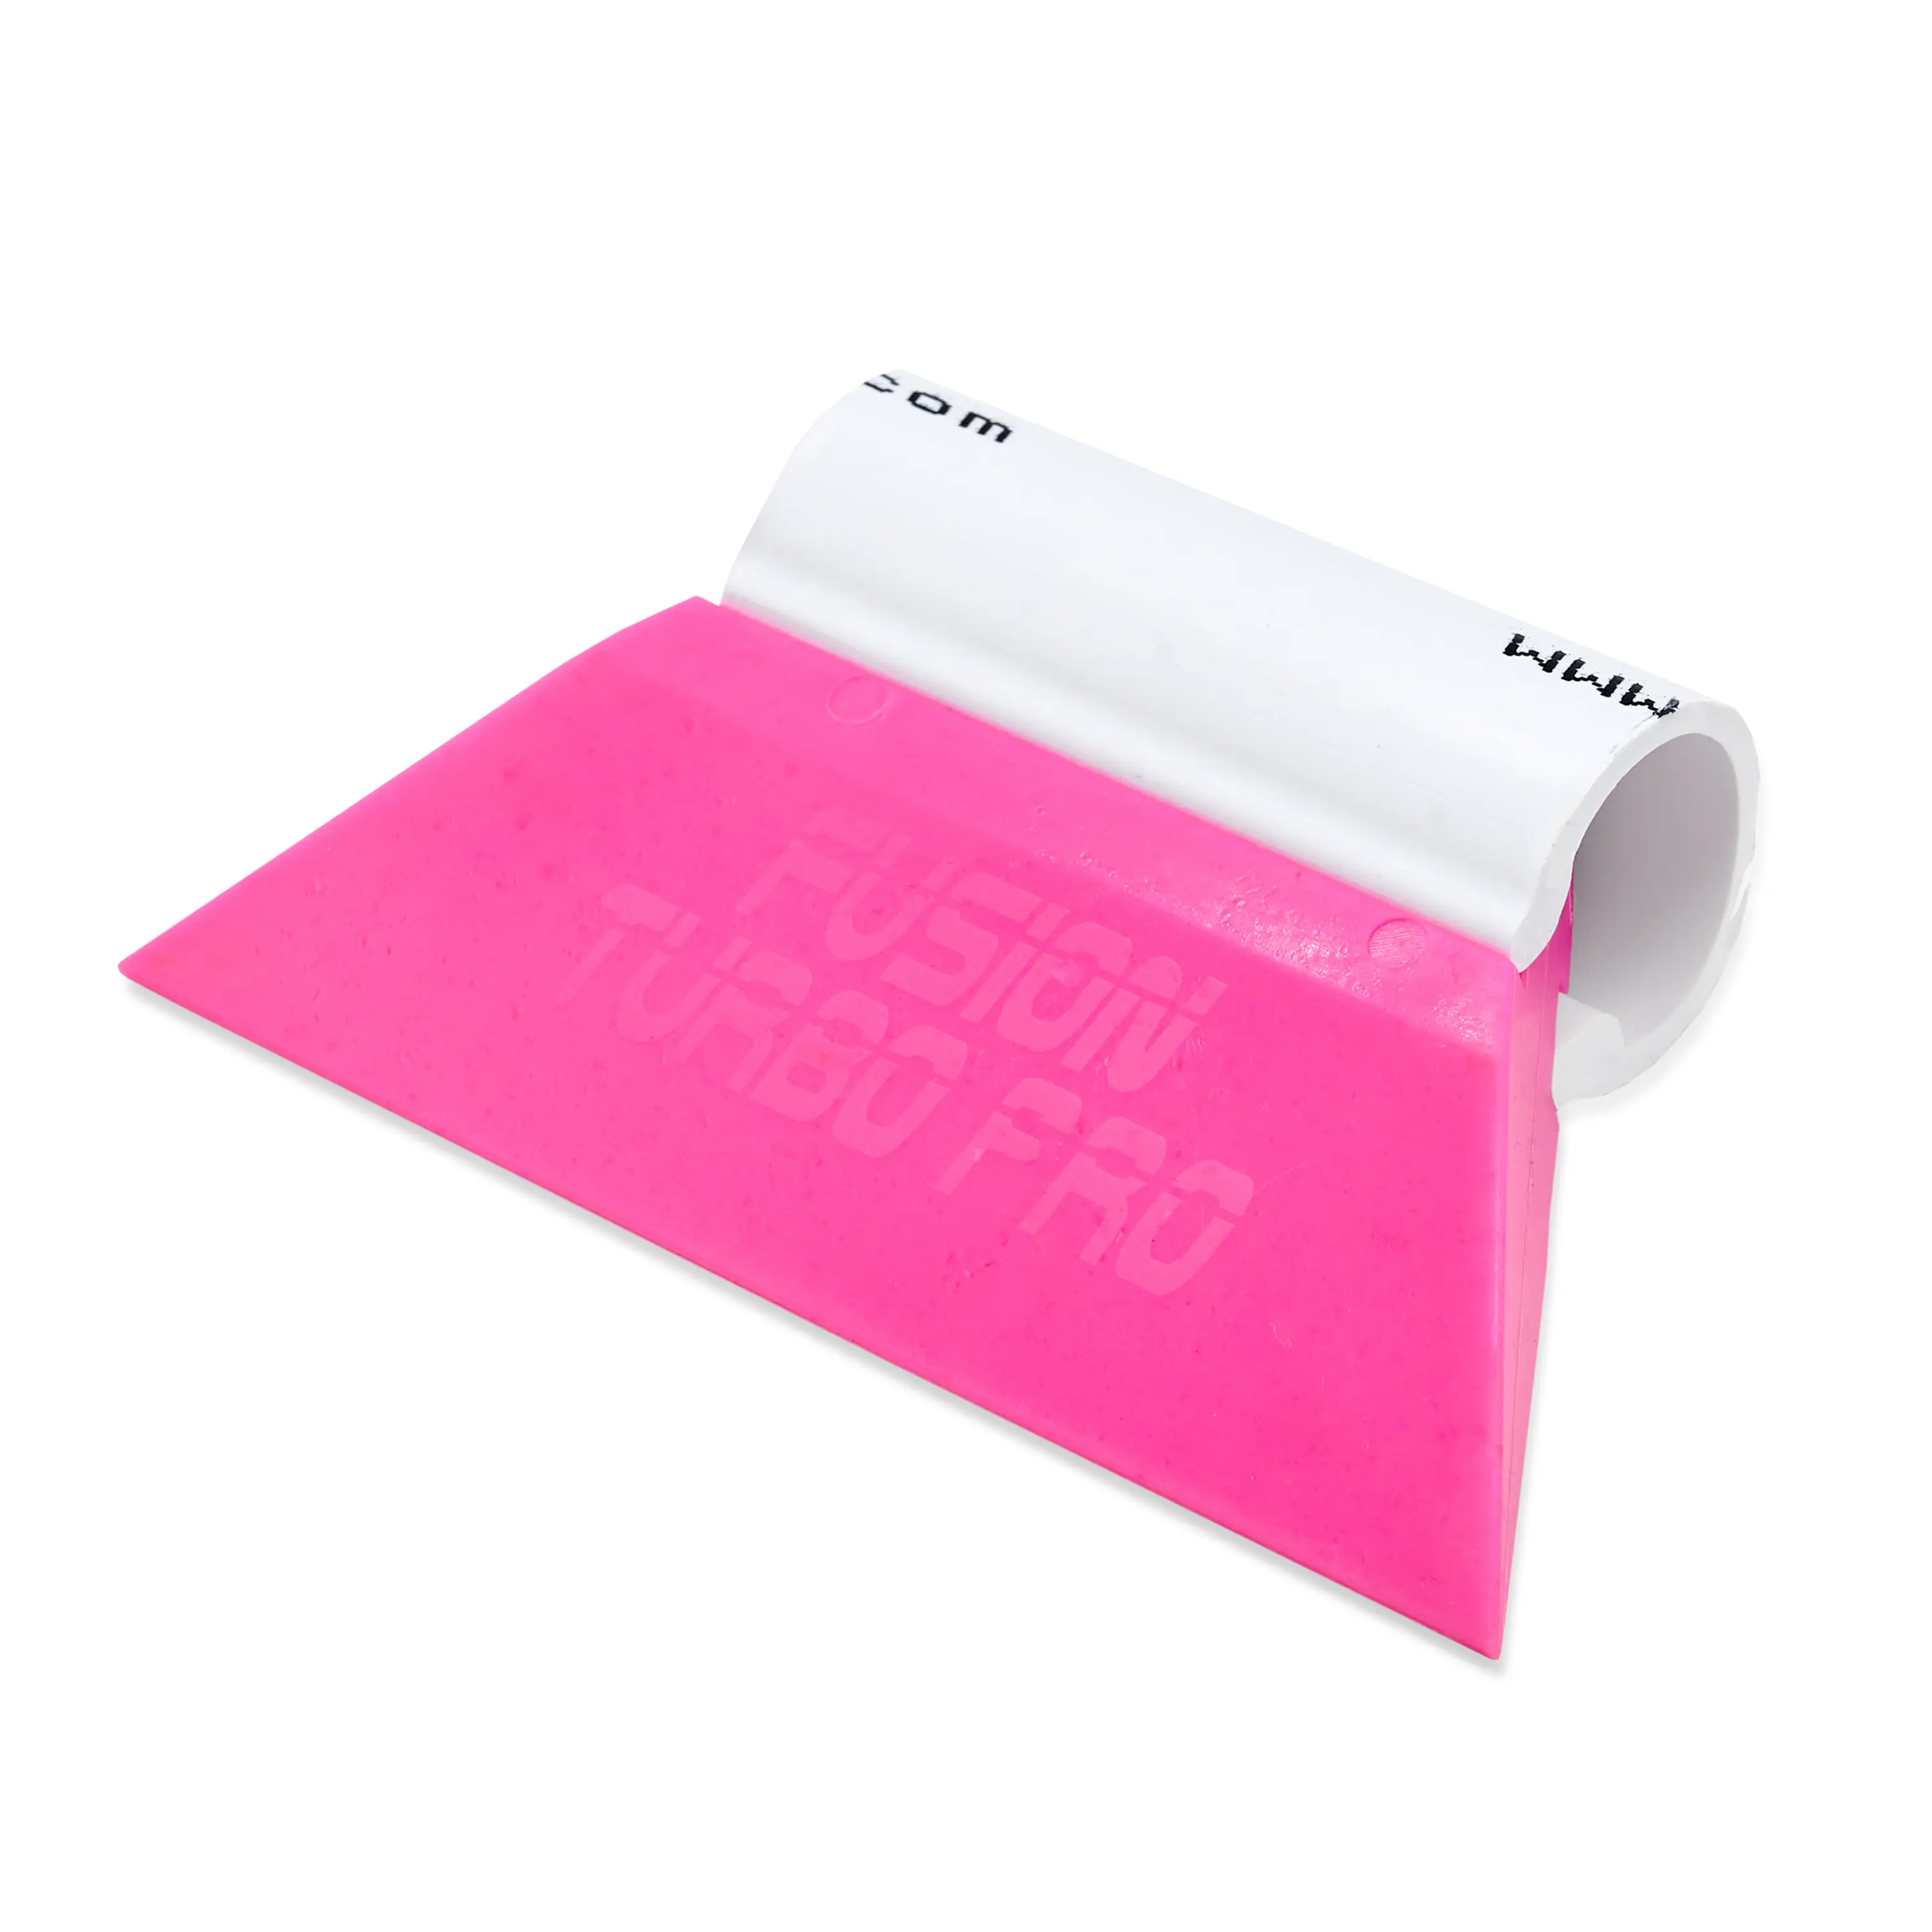 Выгонка FUSION TURBO PRO розовая с пластиковой ручкой, 8,9 см.